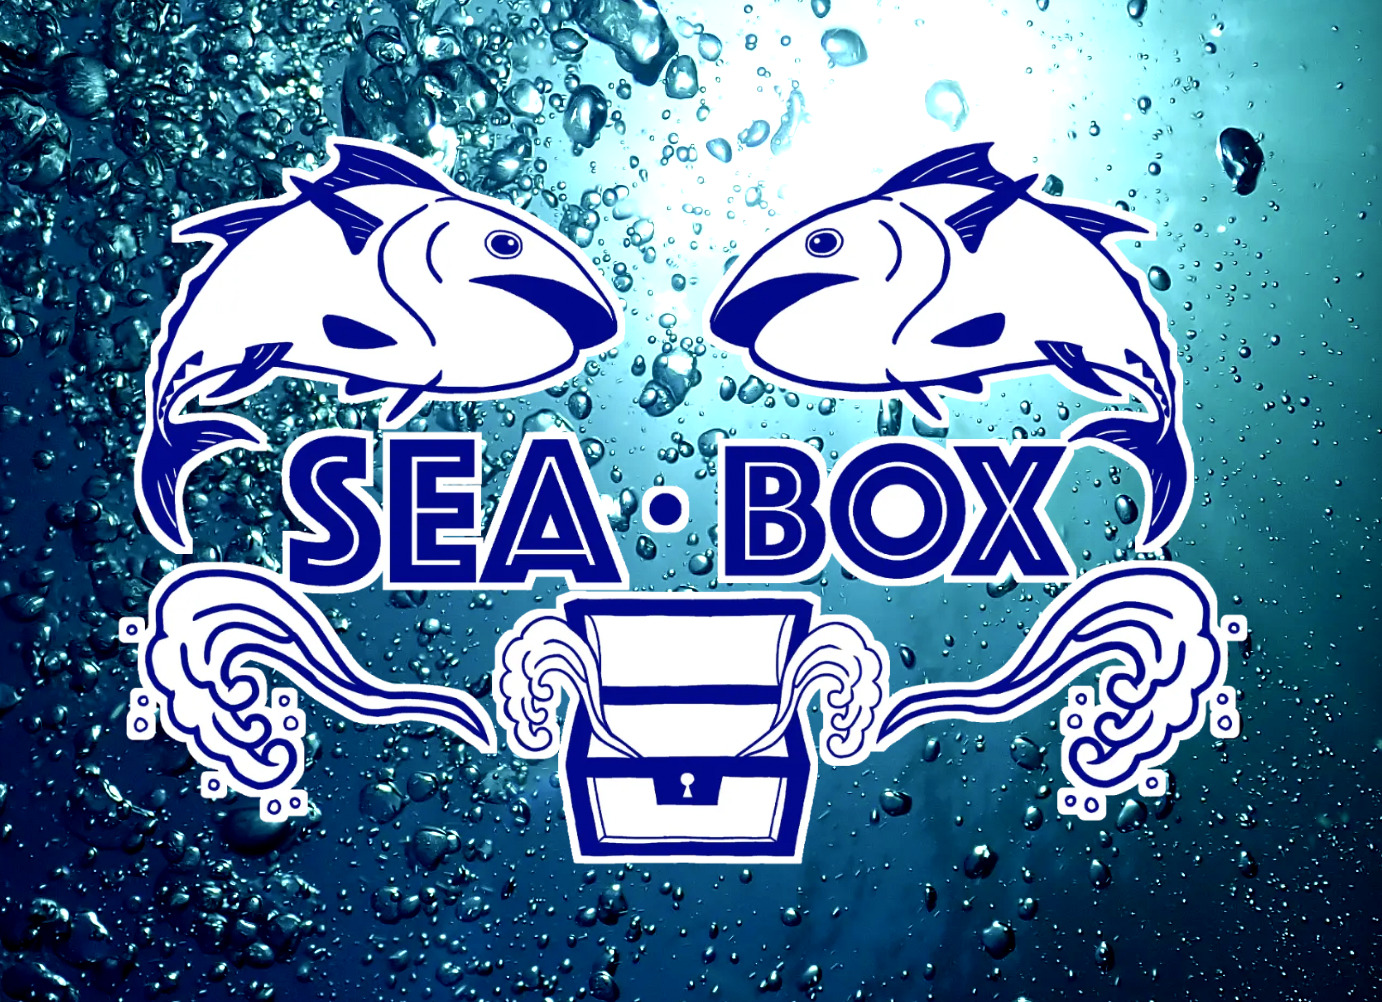 SEA BOX